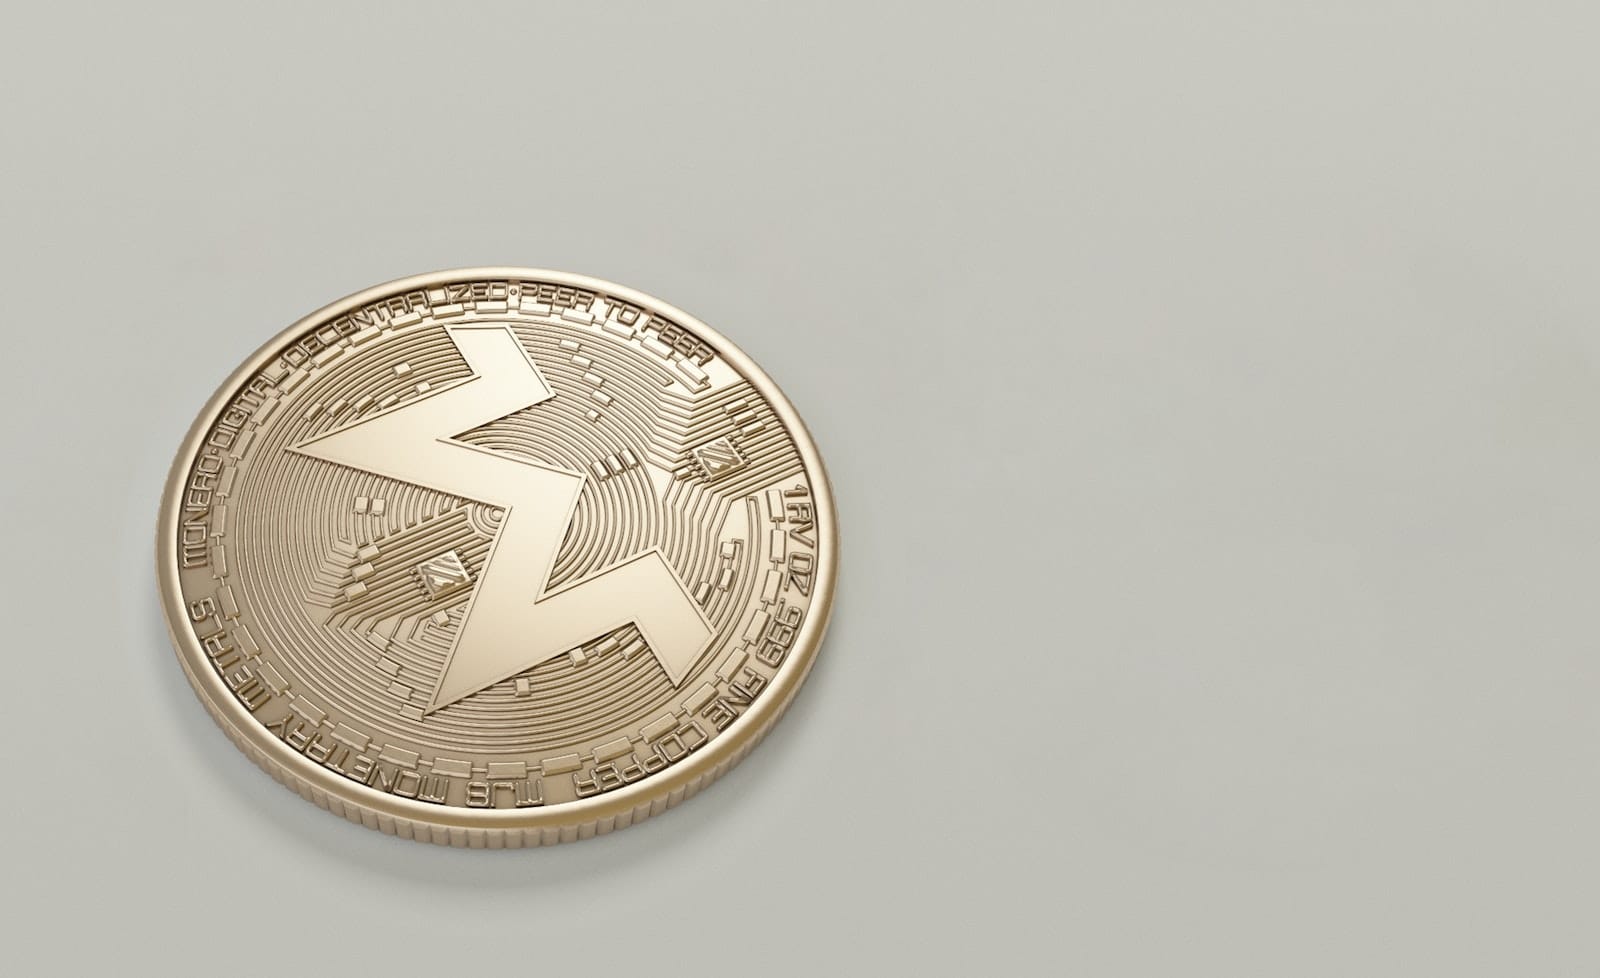 Darmowe zdjęcie z kategorii blockchain, moneta, krypto .